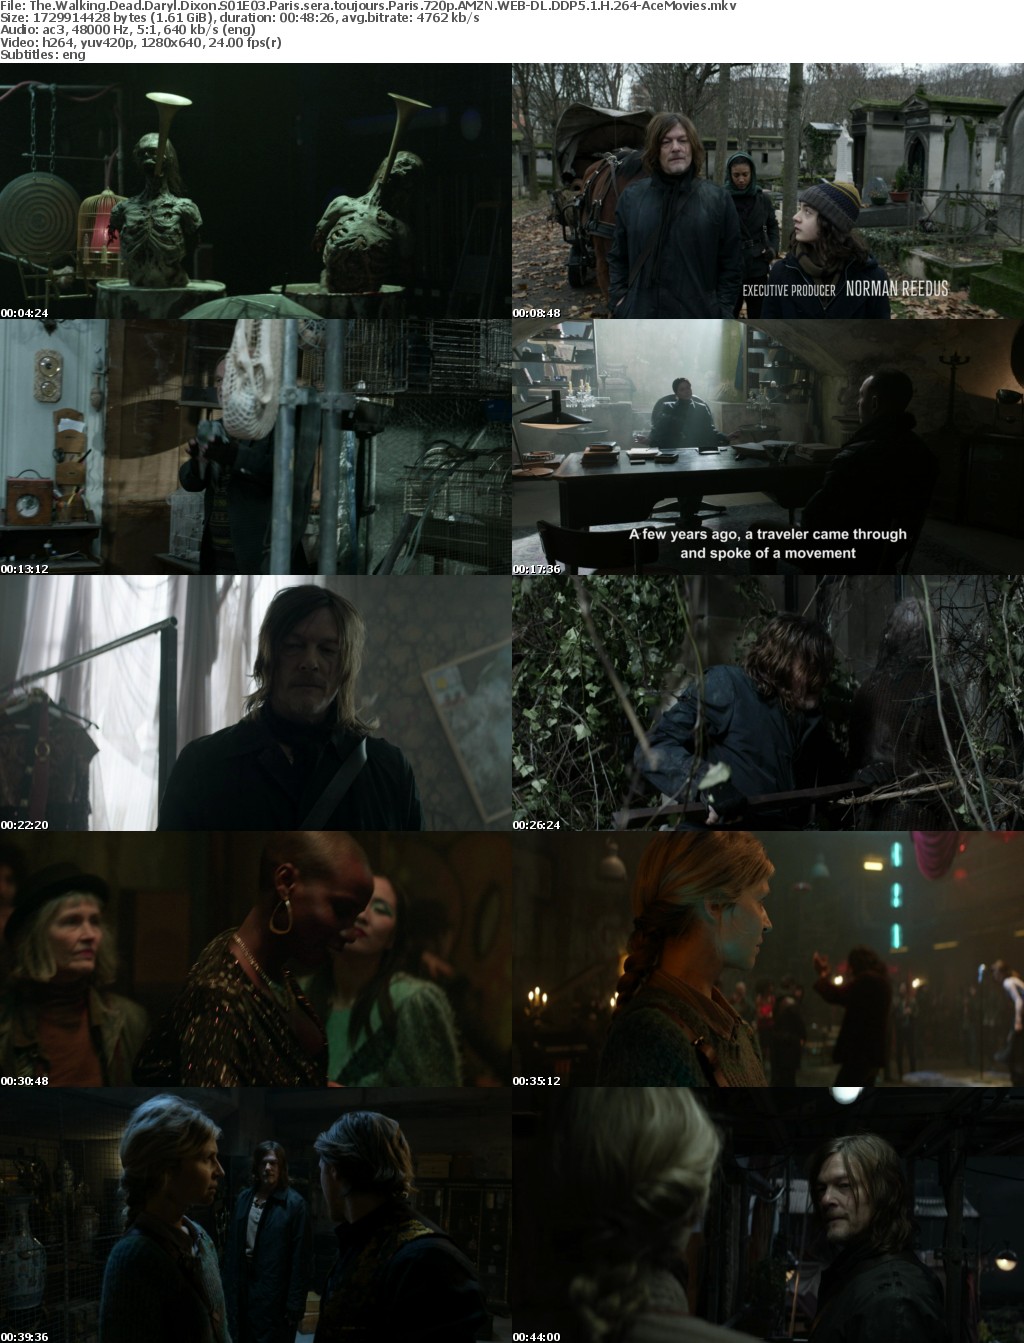 The Walking Dead Daryl Dixon S01E03 Paris sera toujours Paris 720p AMZN WEB-DL DDP5 1 H 264-AceMovies